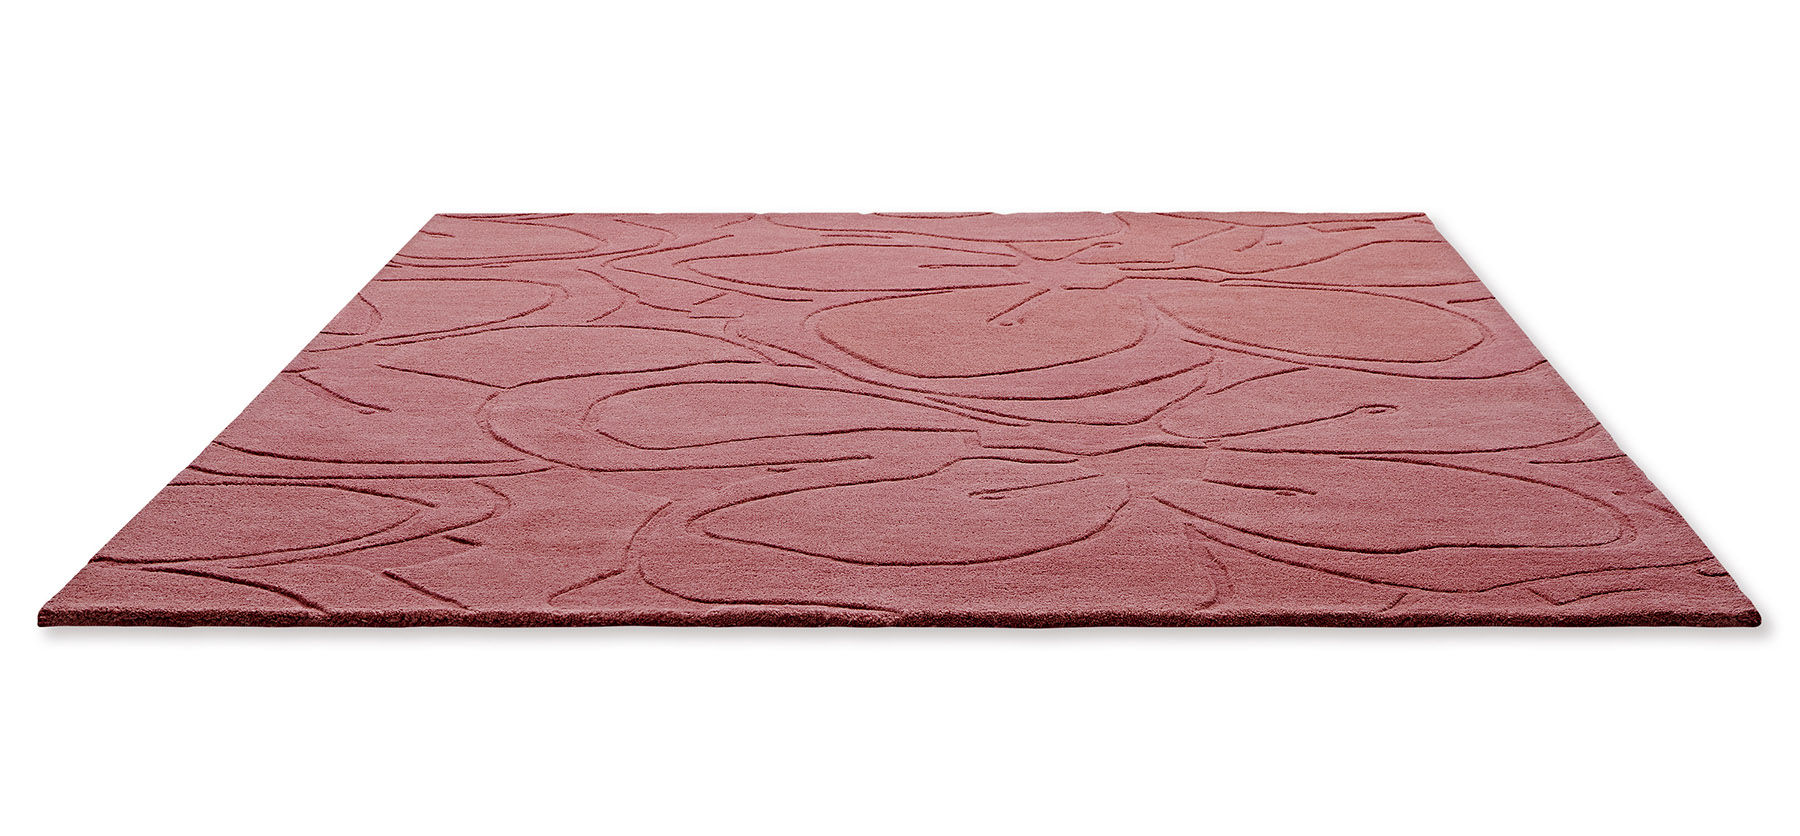 Romantic Magnolia Pink Designer Rug ☞ Size: 4' 7" x 6' 7" (140 x 200 cm)